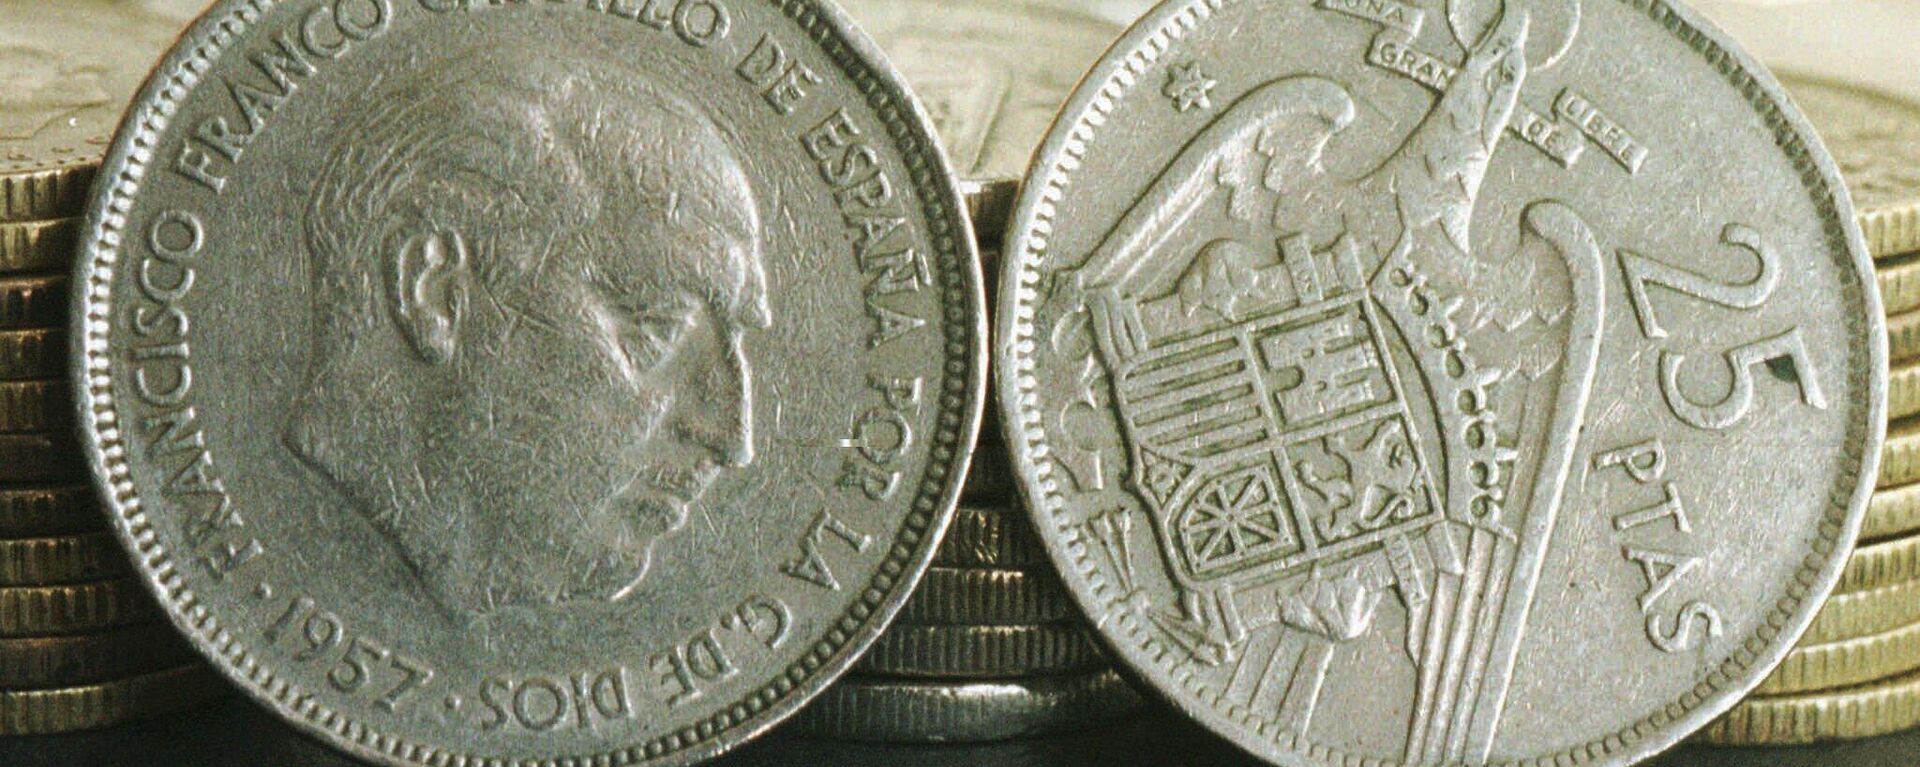 Dos monedas de peseta de la dictadura franquista - Sputnik Mundo, 1920, 20.12.2021